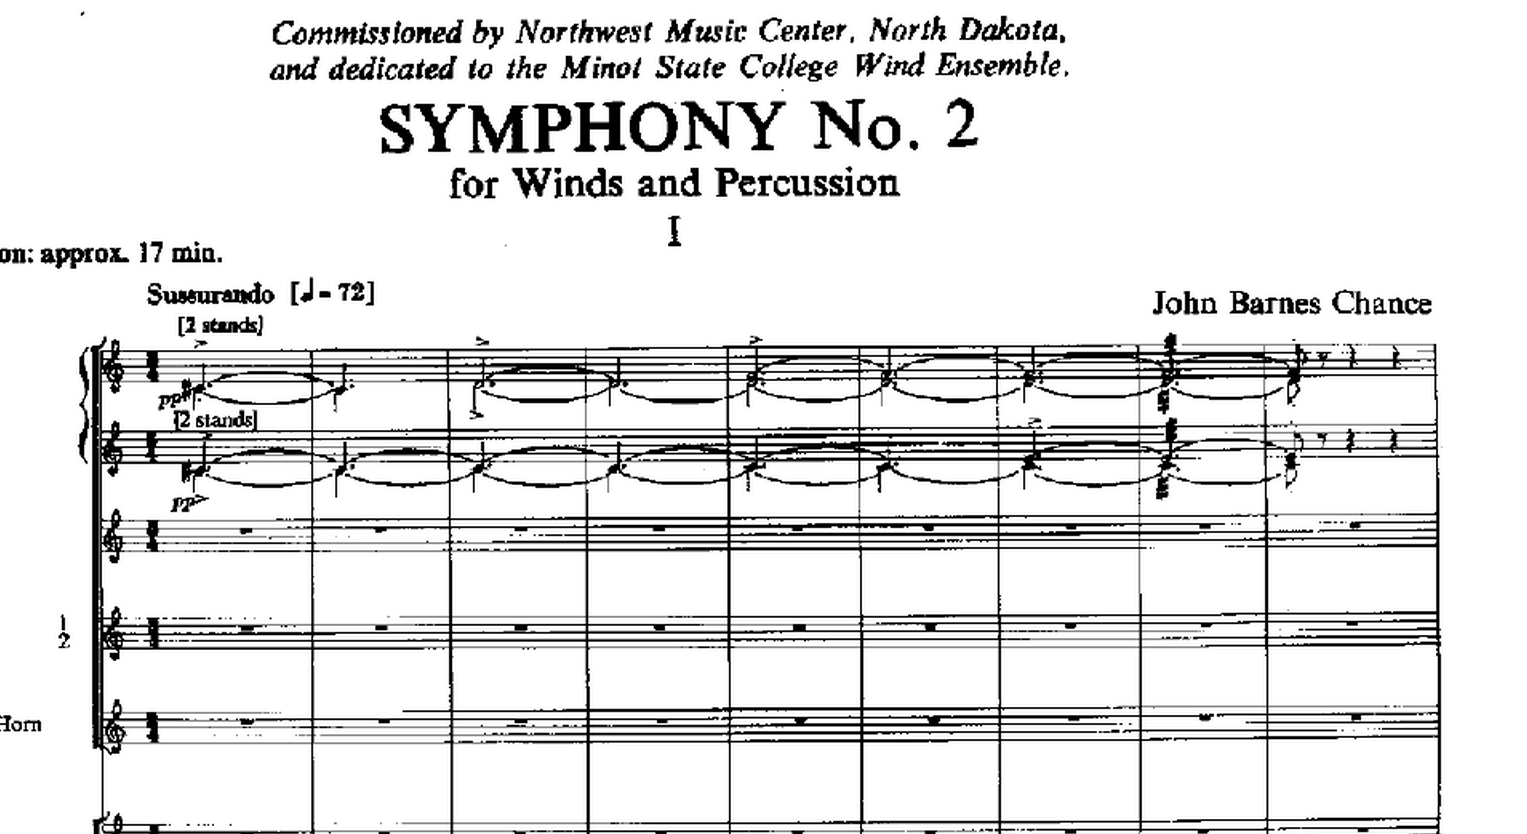 Symphony No. 2: Program Note